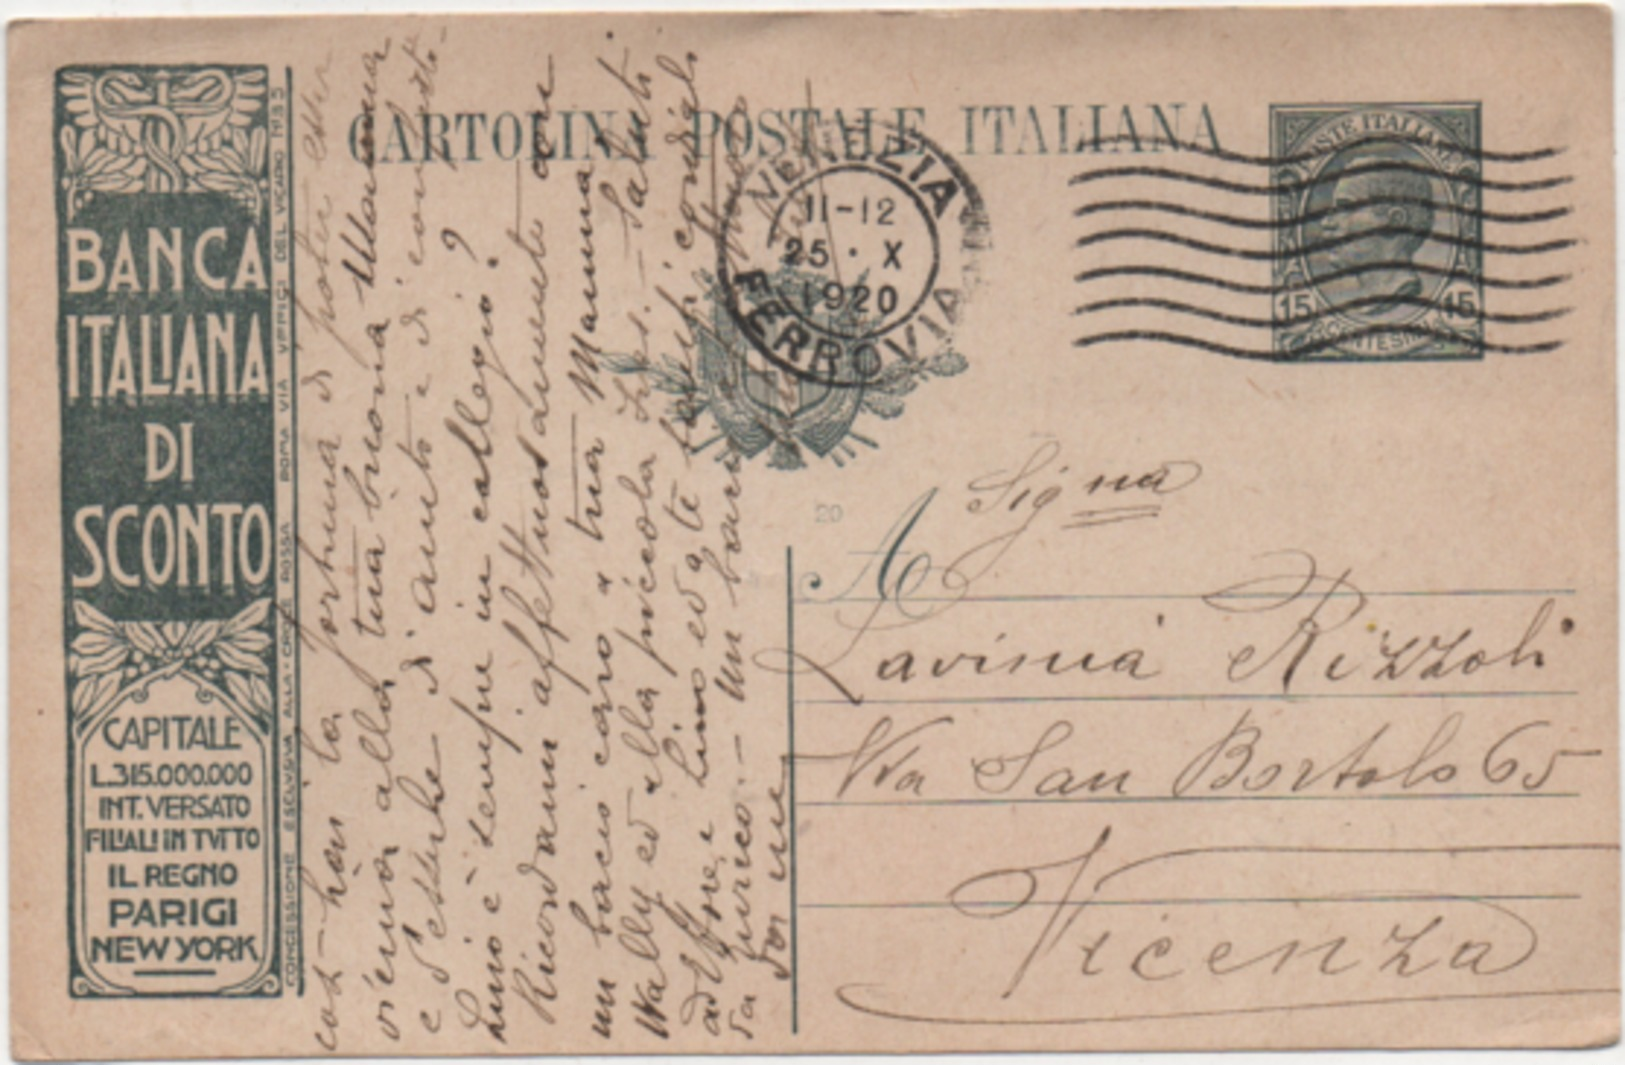 Cartolina Postale Leoni Cent. 15 Banca Italiana Di Sconto Viaggiata Con Annullo Venezia 25.10.1920 - Interi Postali